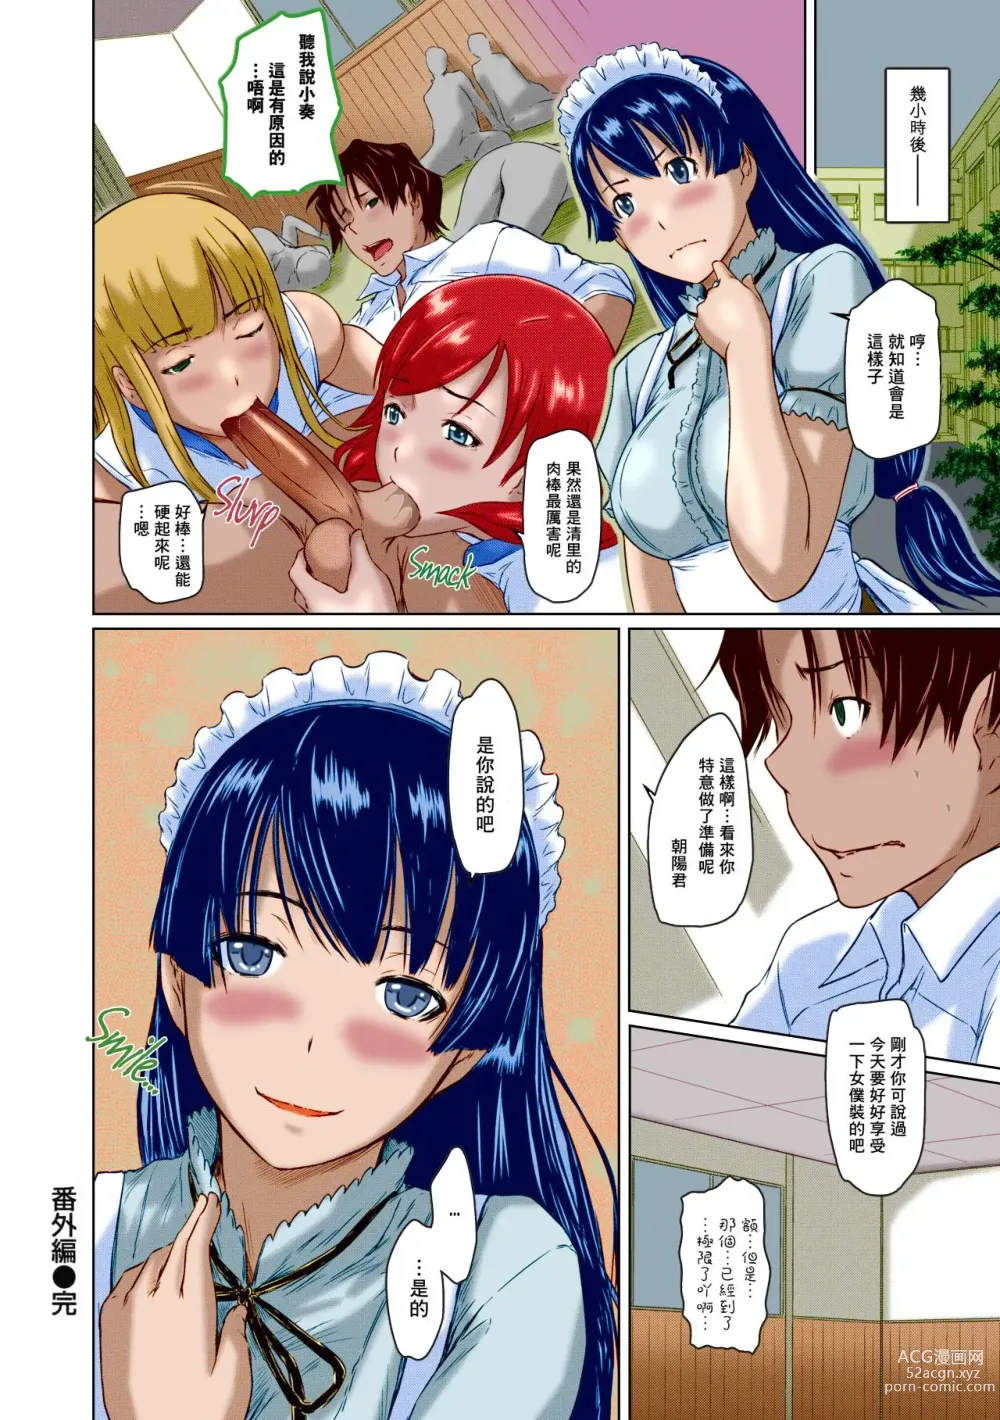 Page 215 of manga Suki ni nattara itchokusen!